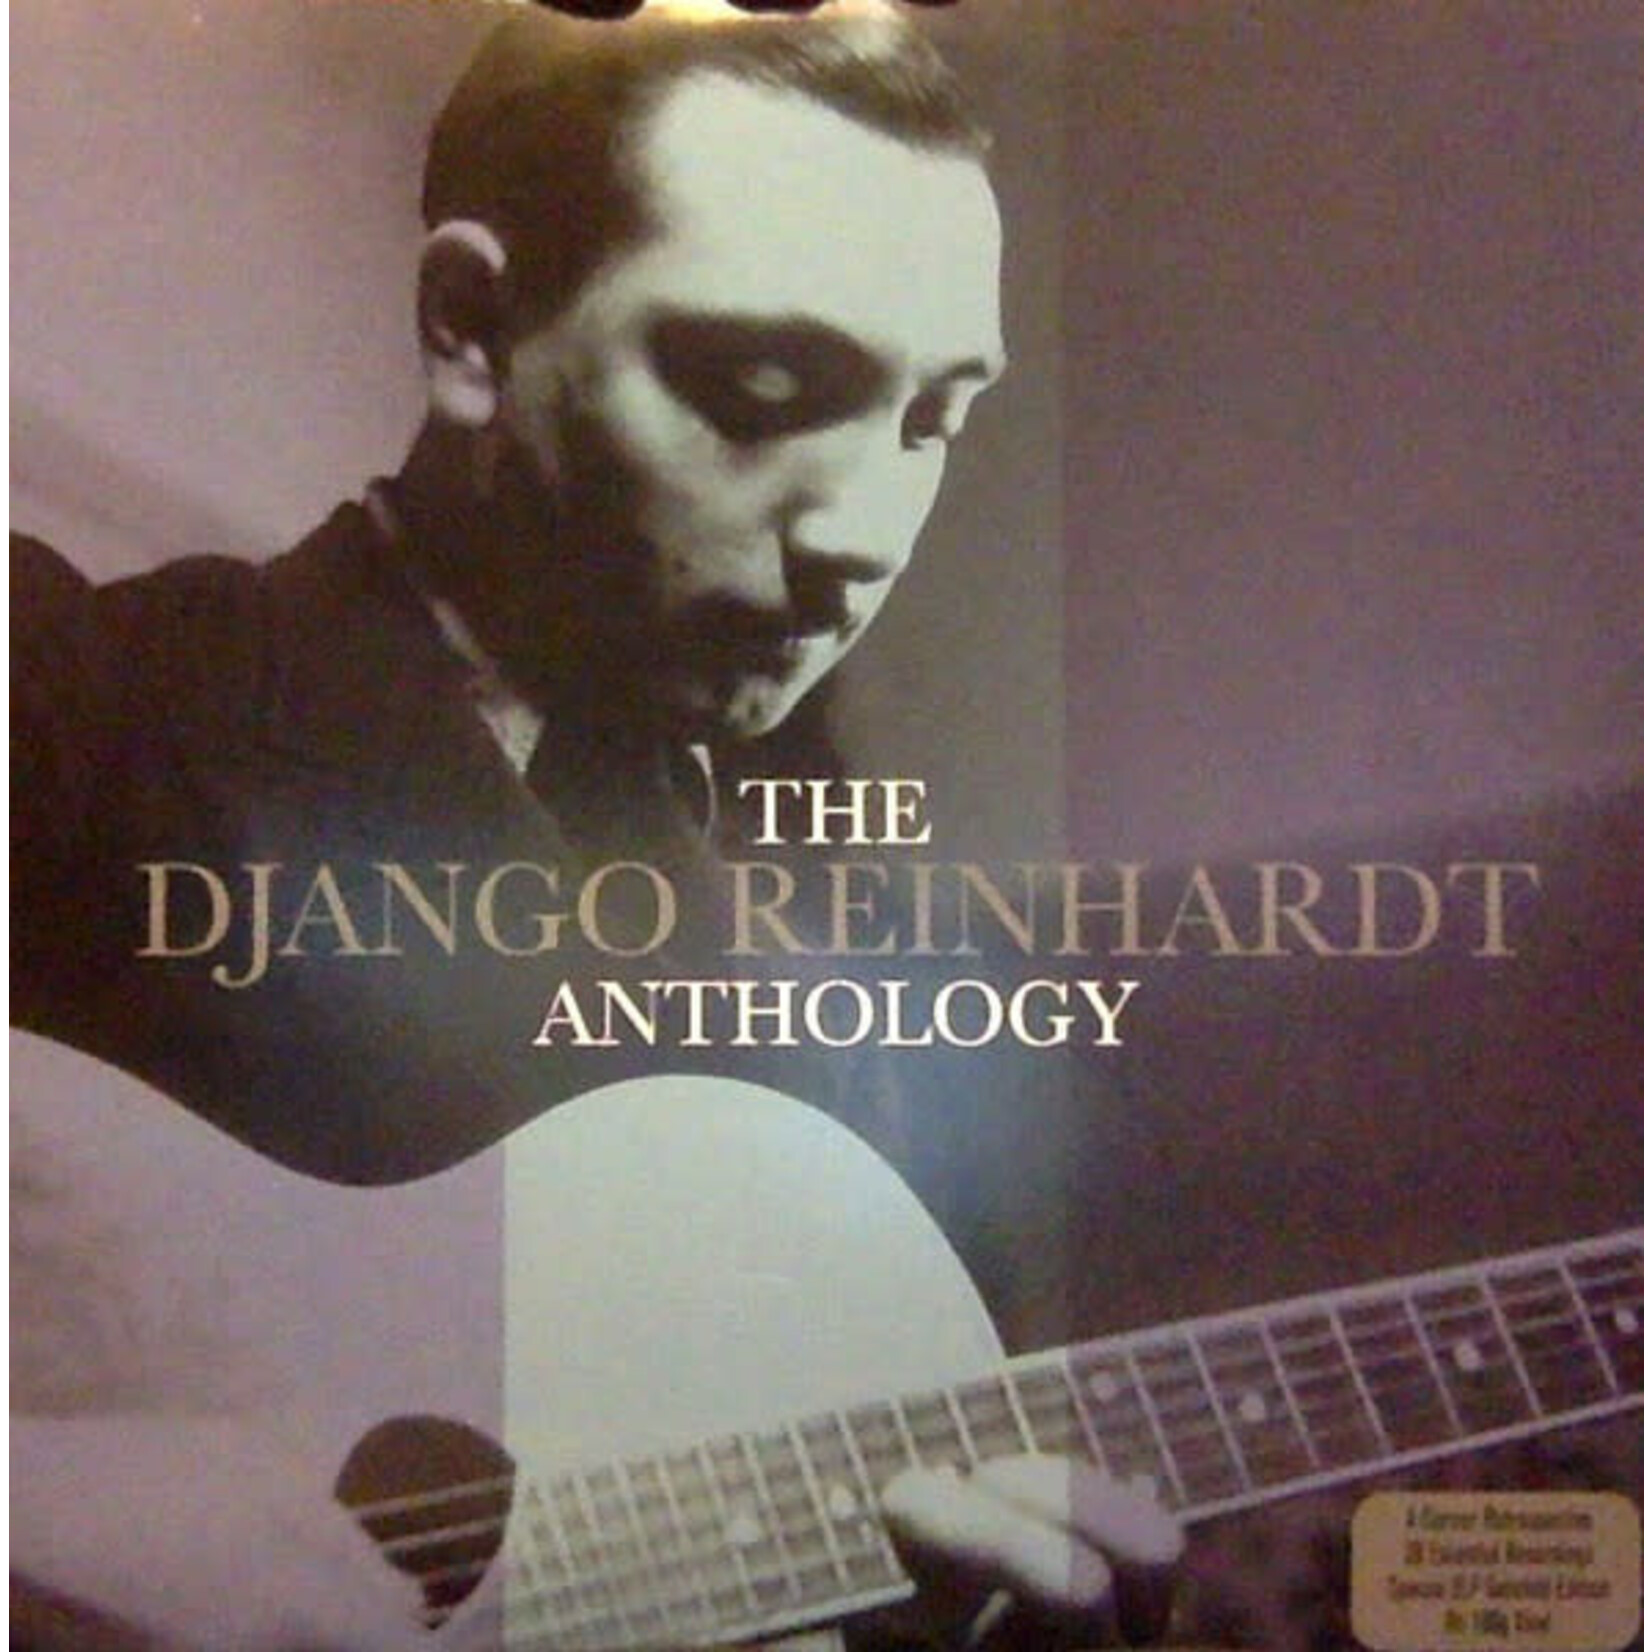 [New] Reinhardt, Django: Anthology (2LP/180g HQ vinyl) [NOT NOW]